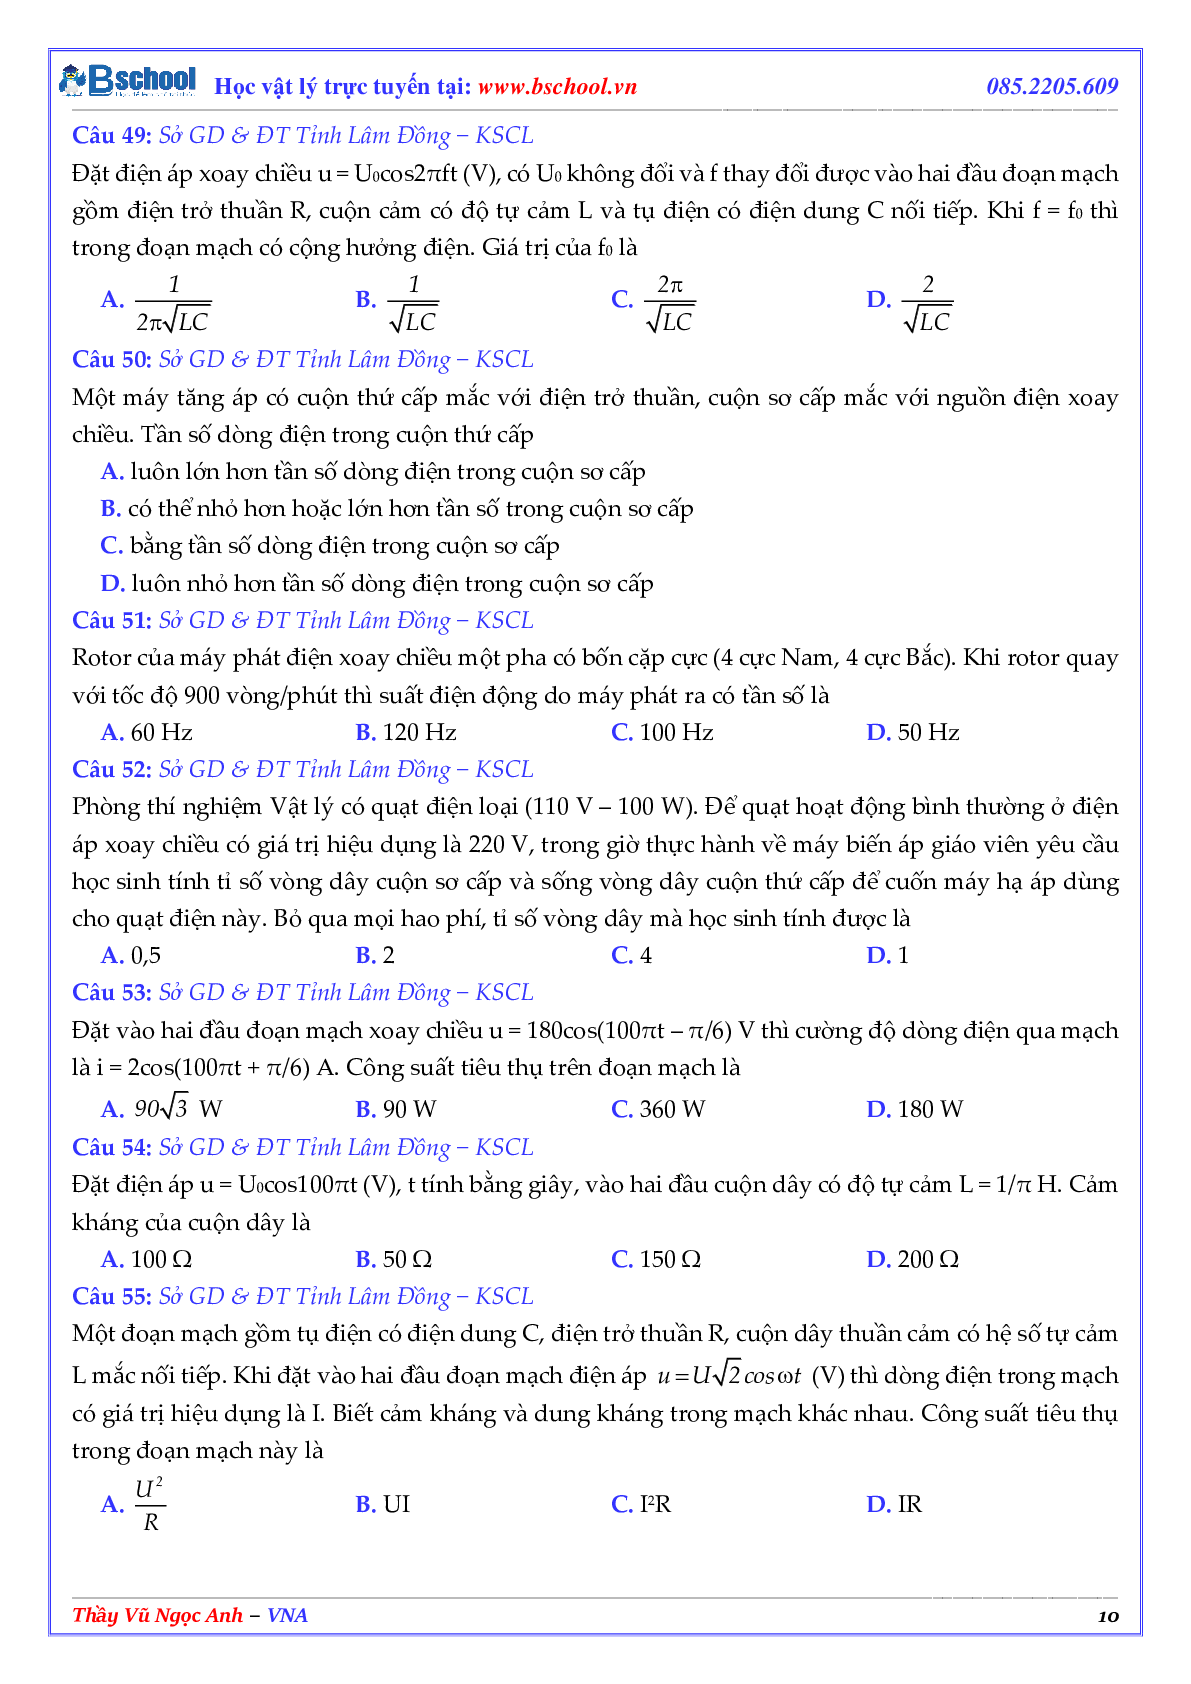 Tuyển Tập Các Câu Hỏi Điện Xoay Chiều Trong Các Đề Thi THPT QG Phần 1 (trang 10)